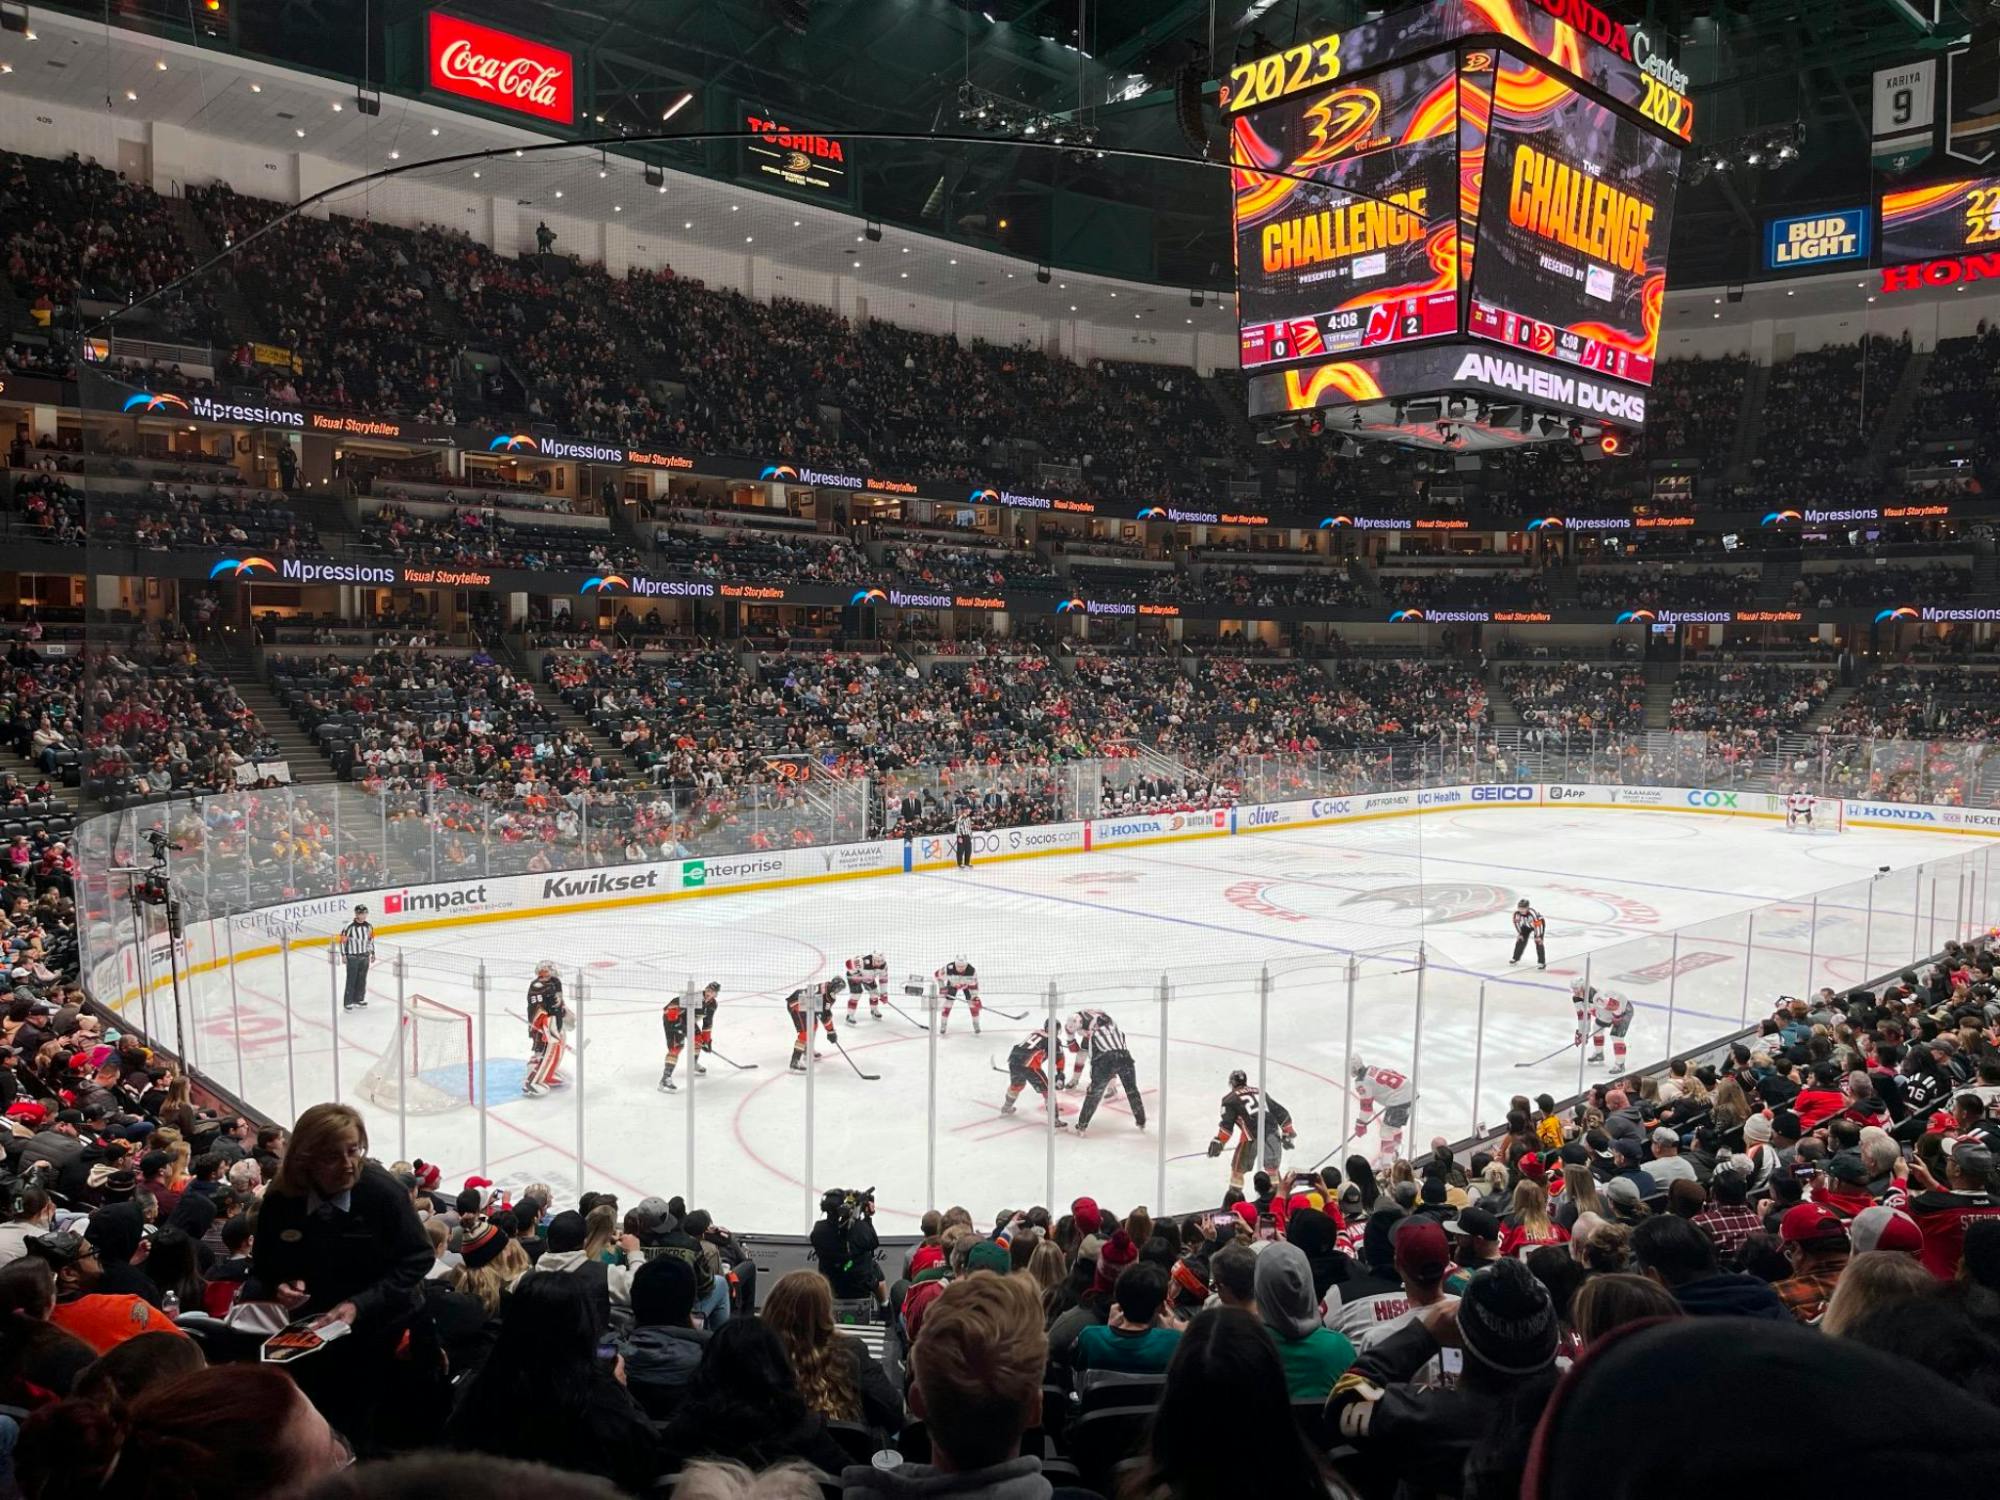 Eintrittskarte für das Eishockeyspiel der Anaheim Ducks im Honda Center